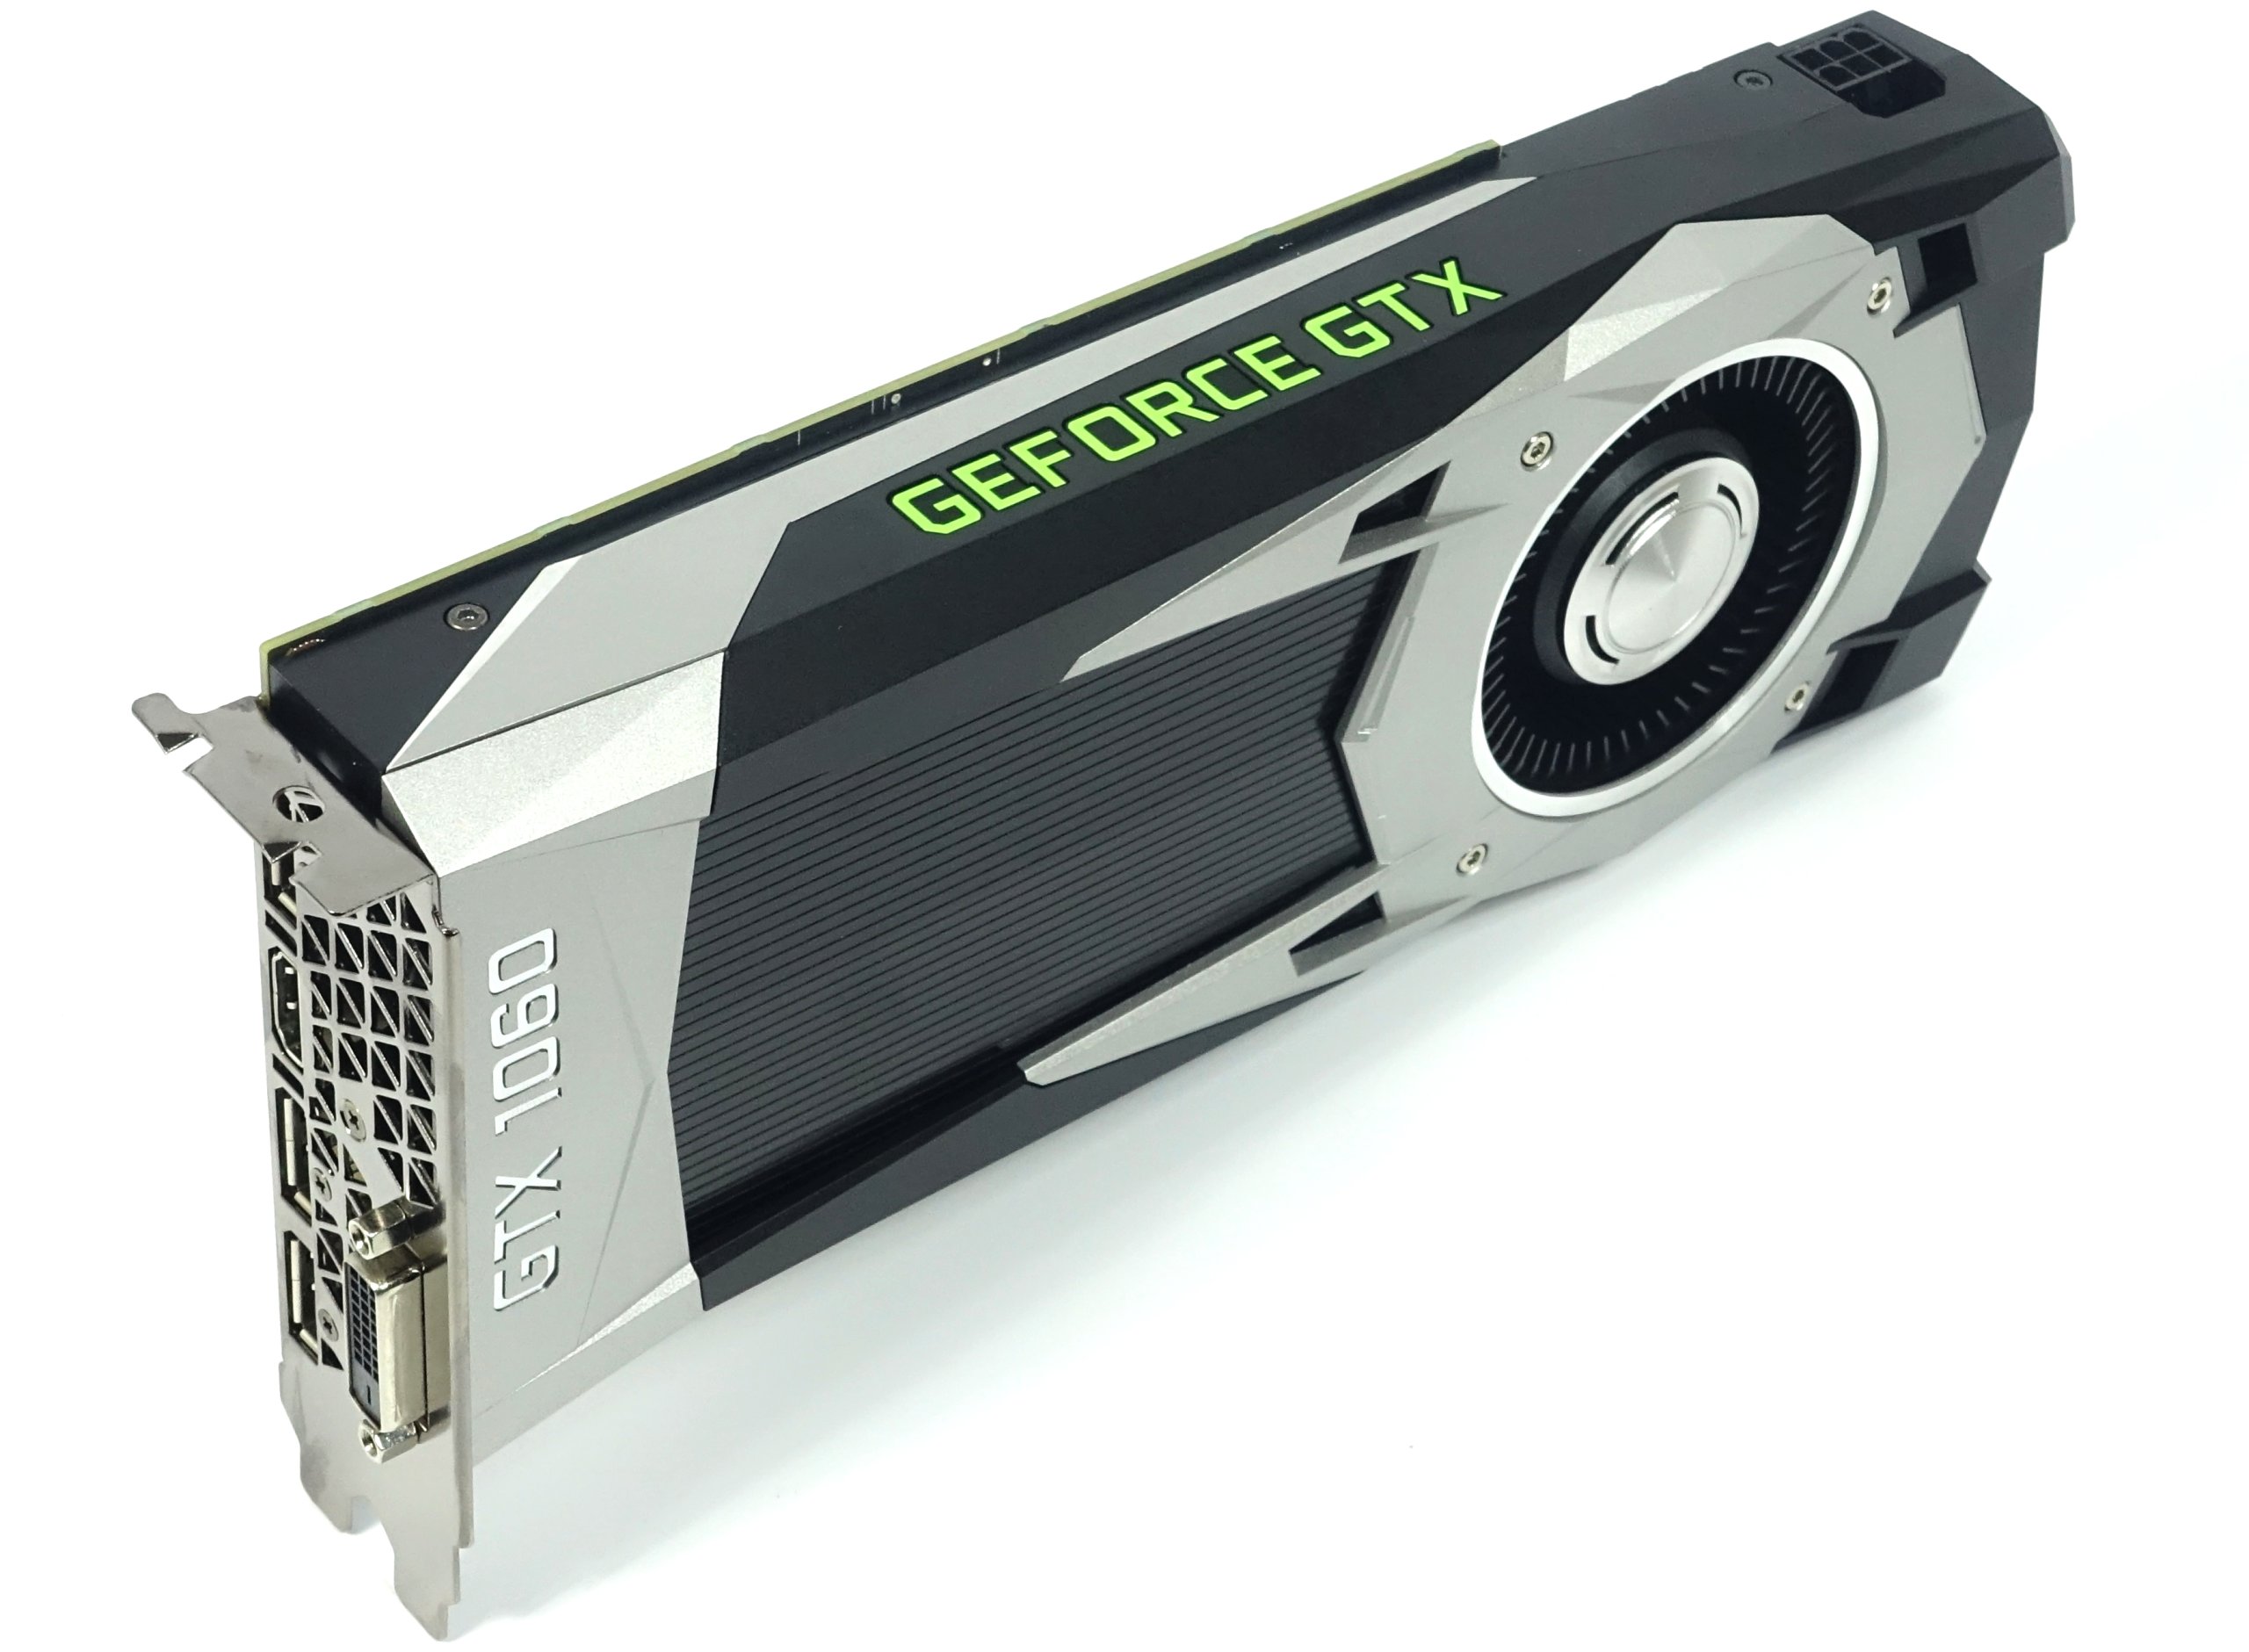 Voorschrijven ontwikkelen bod Best Nvidia GeForce GTX 1060 Graphics Cards - Tom's Hardware | Tom's  Hardware